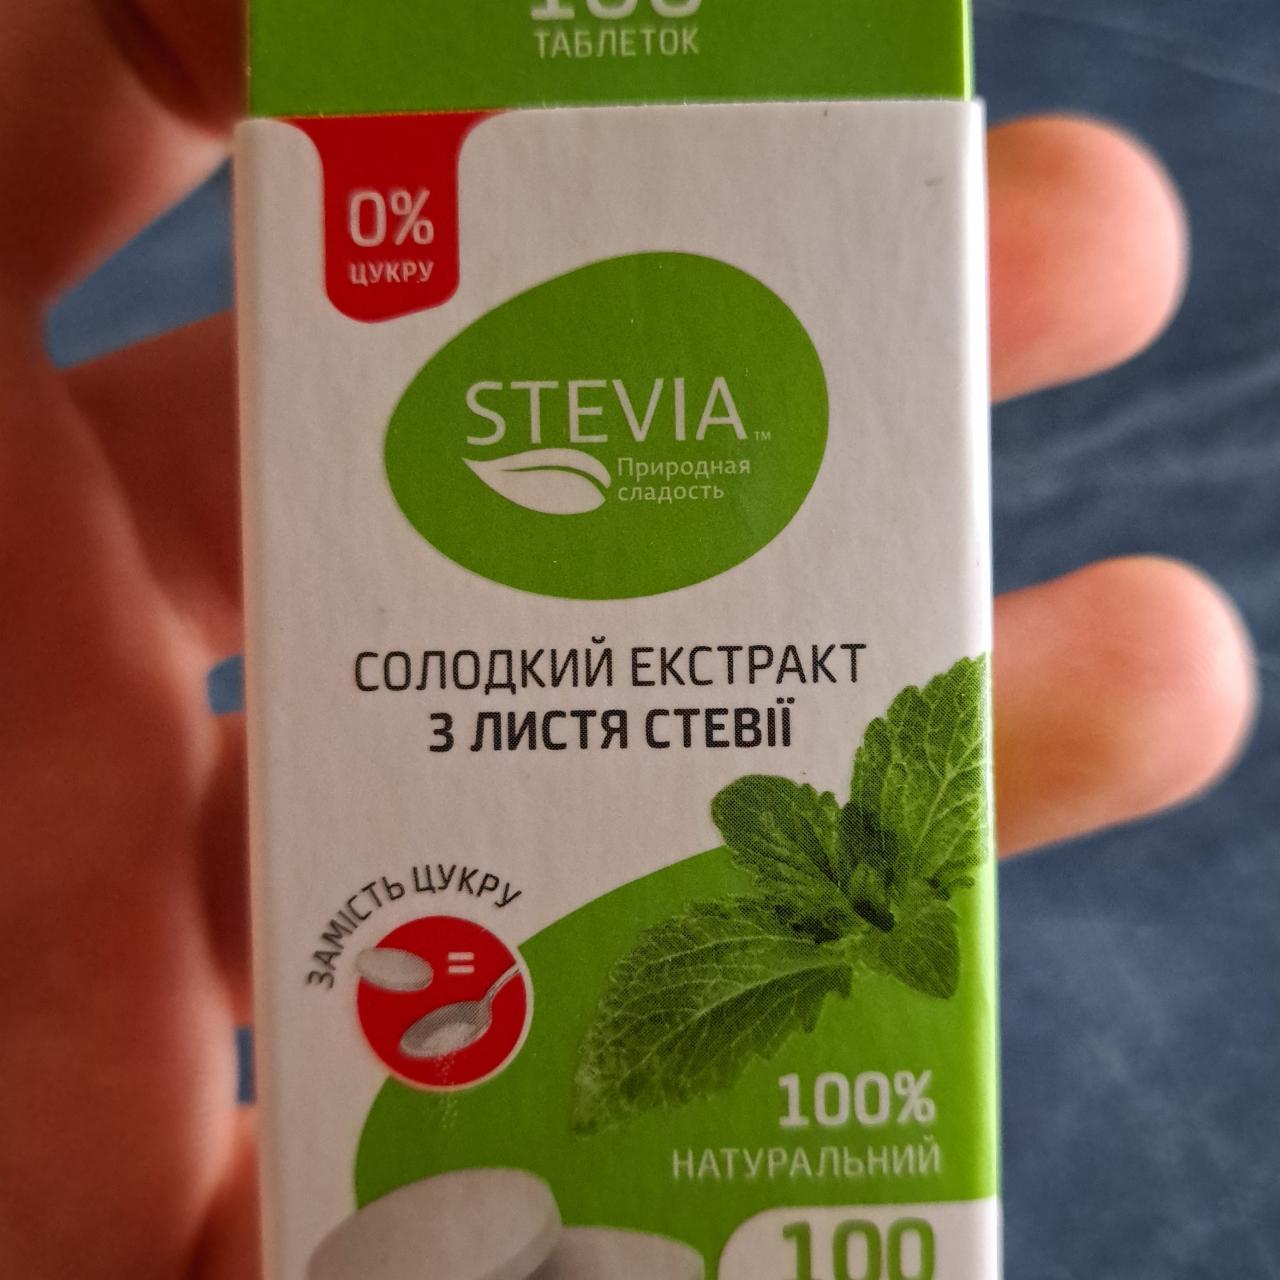 Фото - сладкий экстракт из листьев стевии в таблетках Stevia